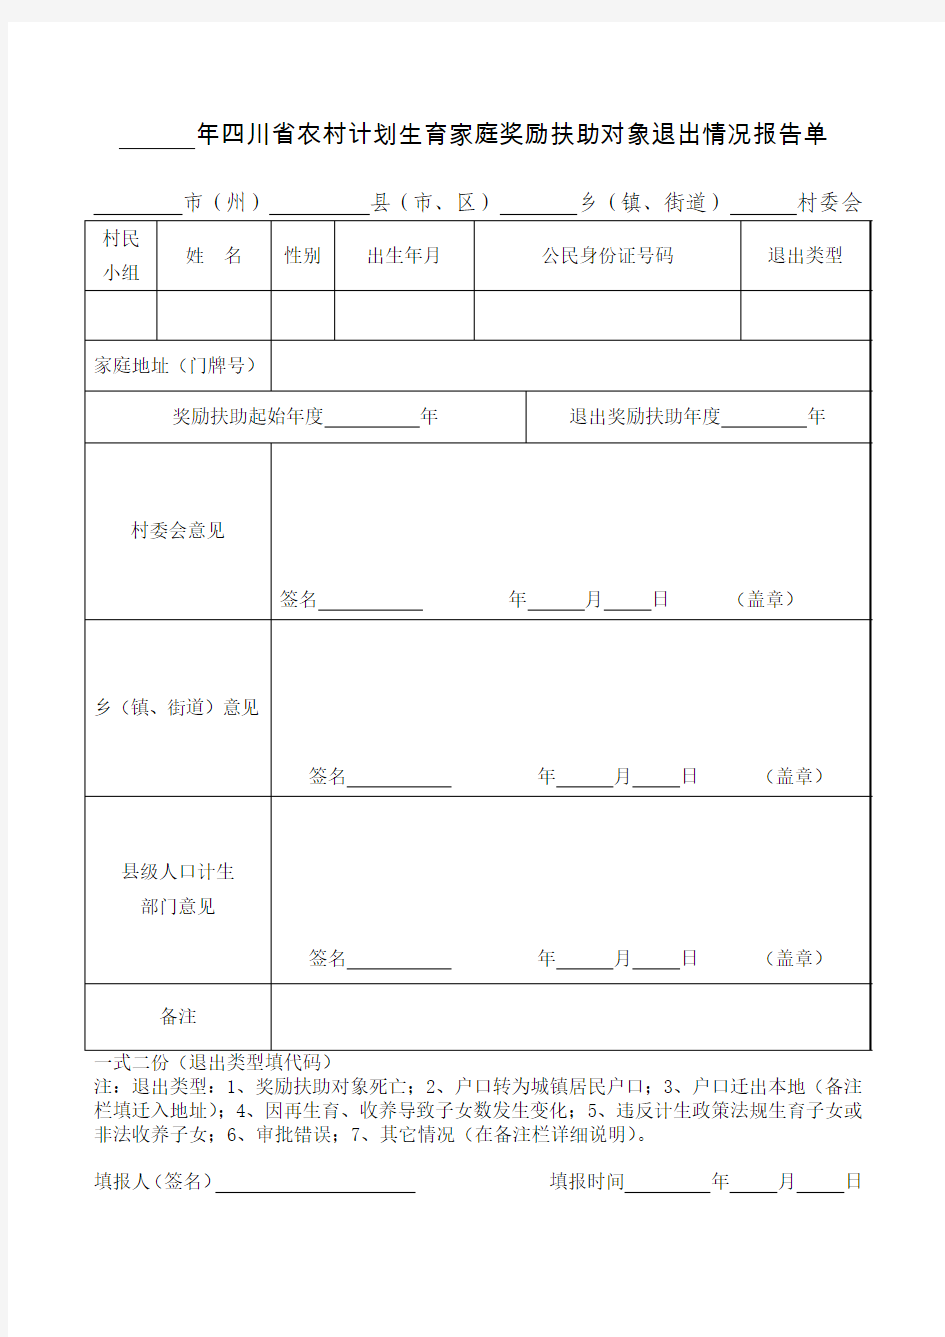 四川省农村计划生育家庭奖励扶助对象退出情况报告单